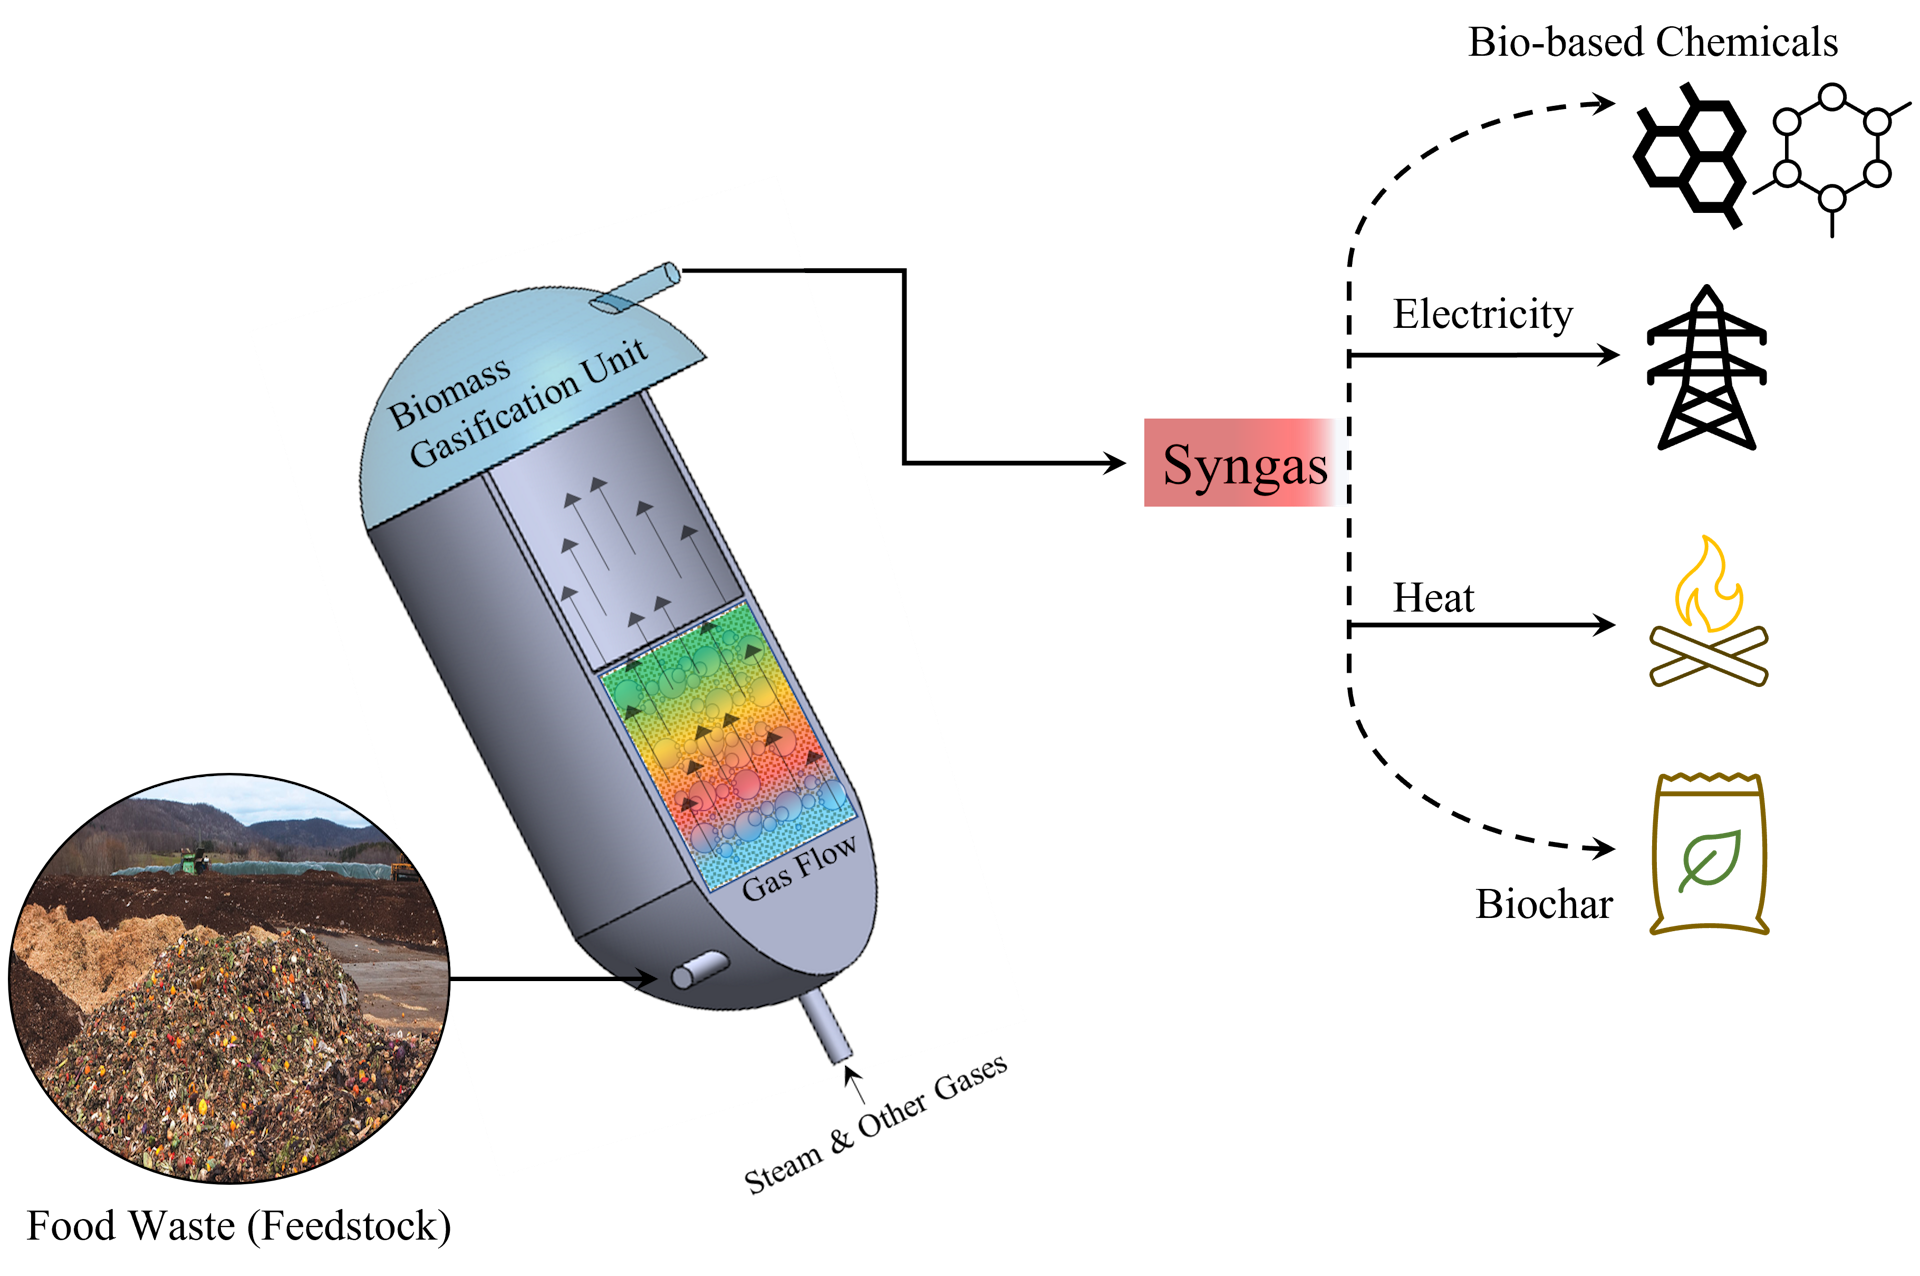 Схема процесса газификации биомассы, при котором пищевые отходы смешиваются с теплом, паром и кислородом для получения синтетического топлива или газов, называемых синтетическим газом.